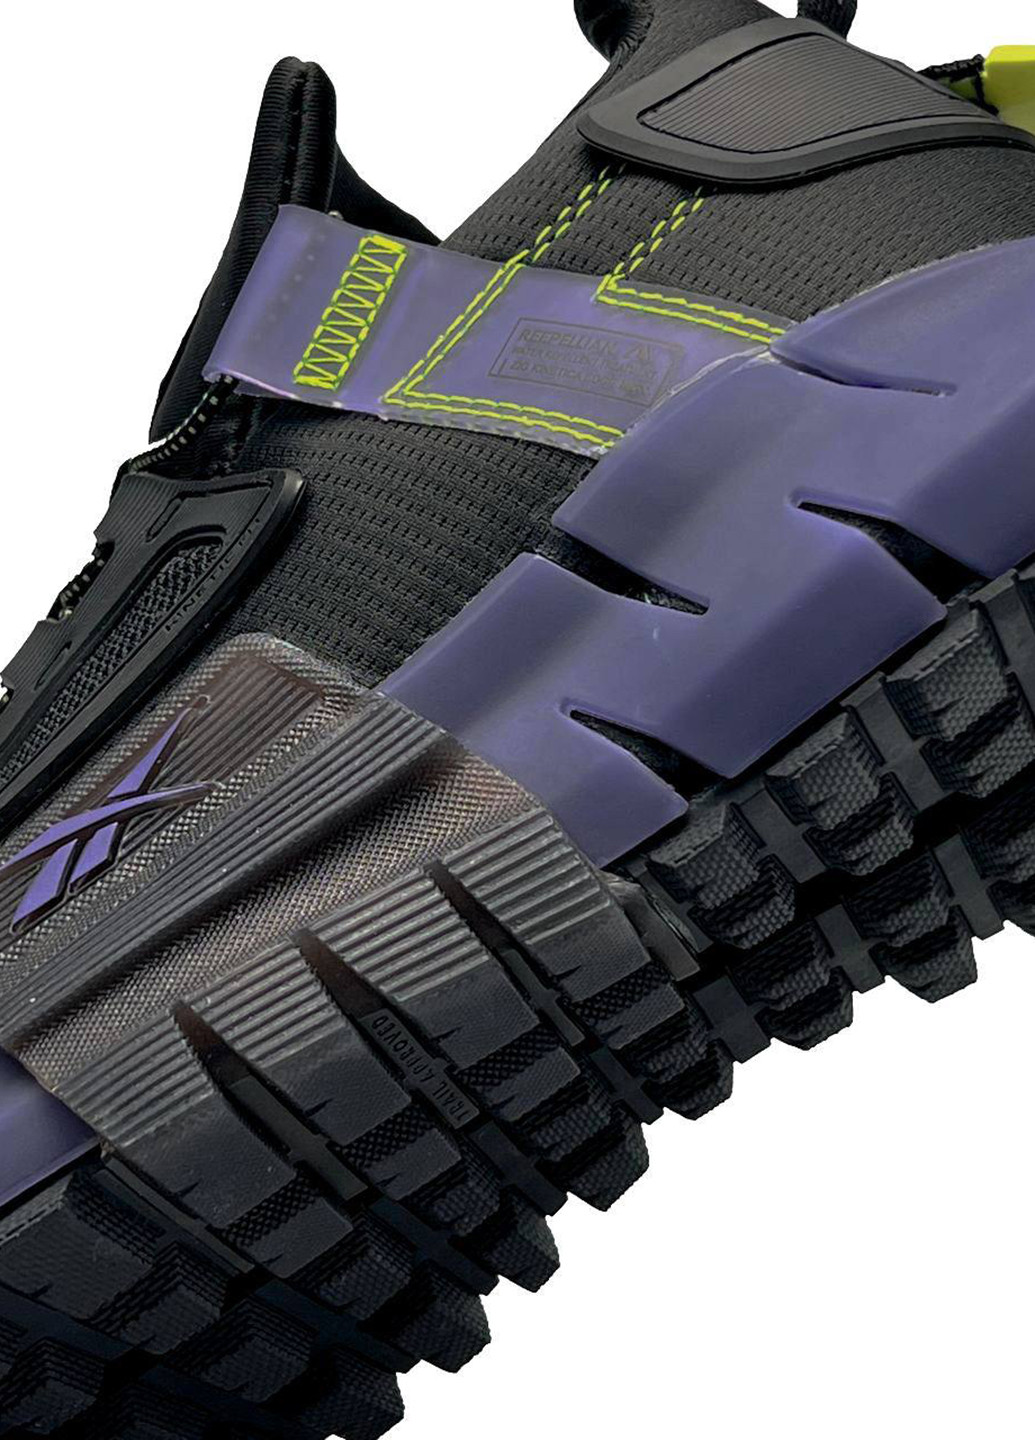 Цветные демисезонные кроссовки Reebok Zig Kinetica Fit Black Purple